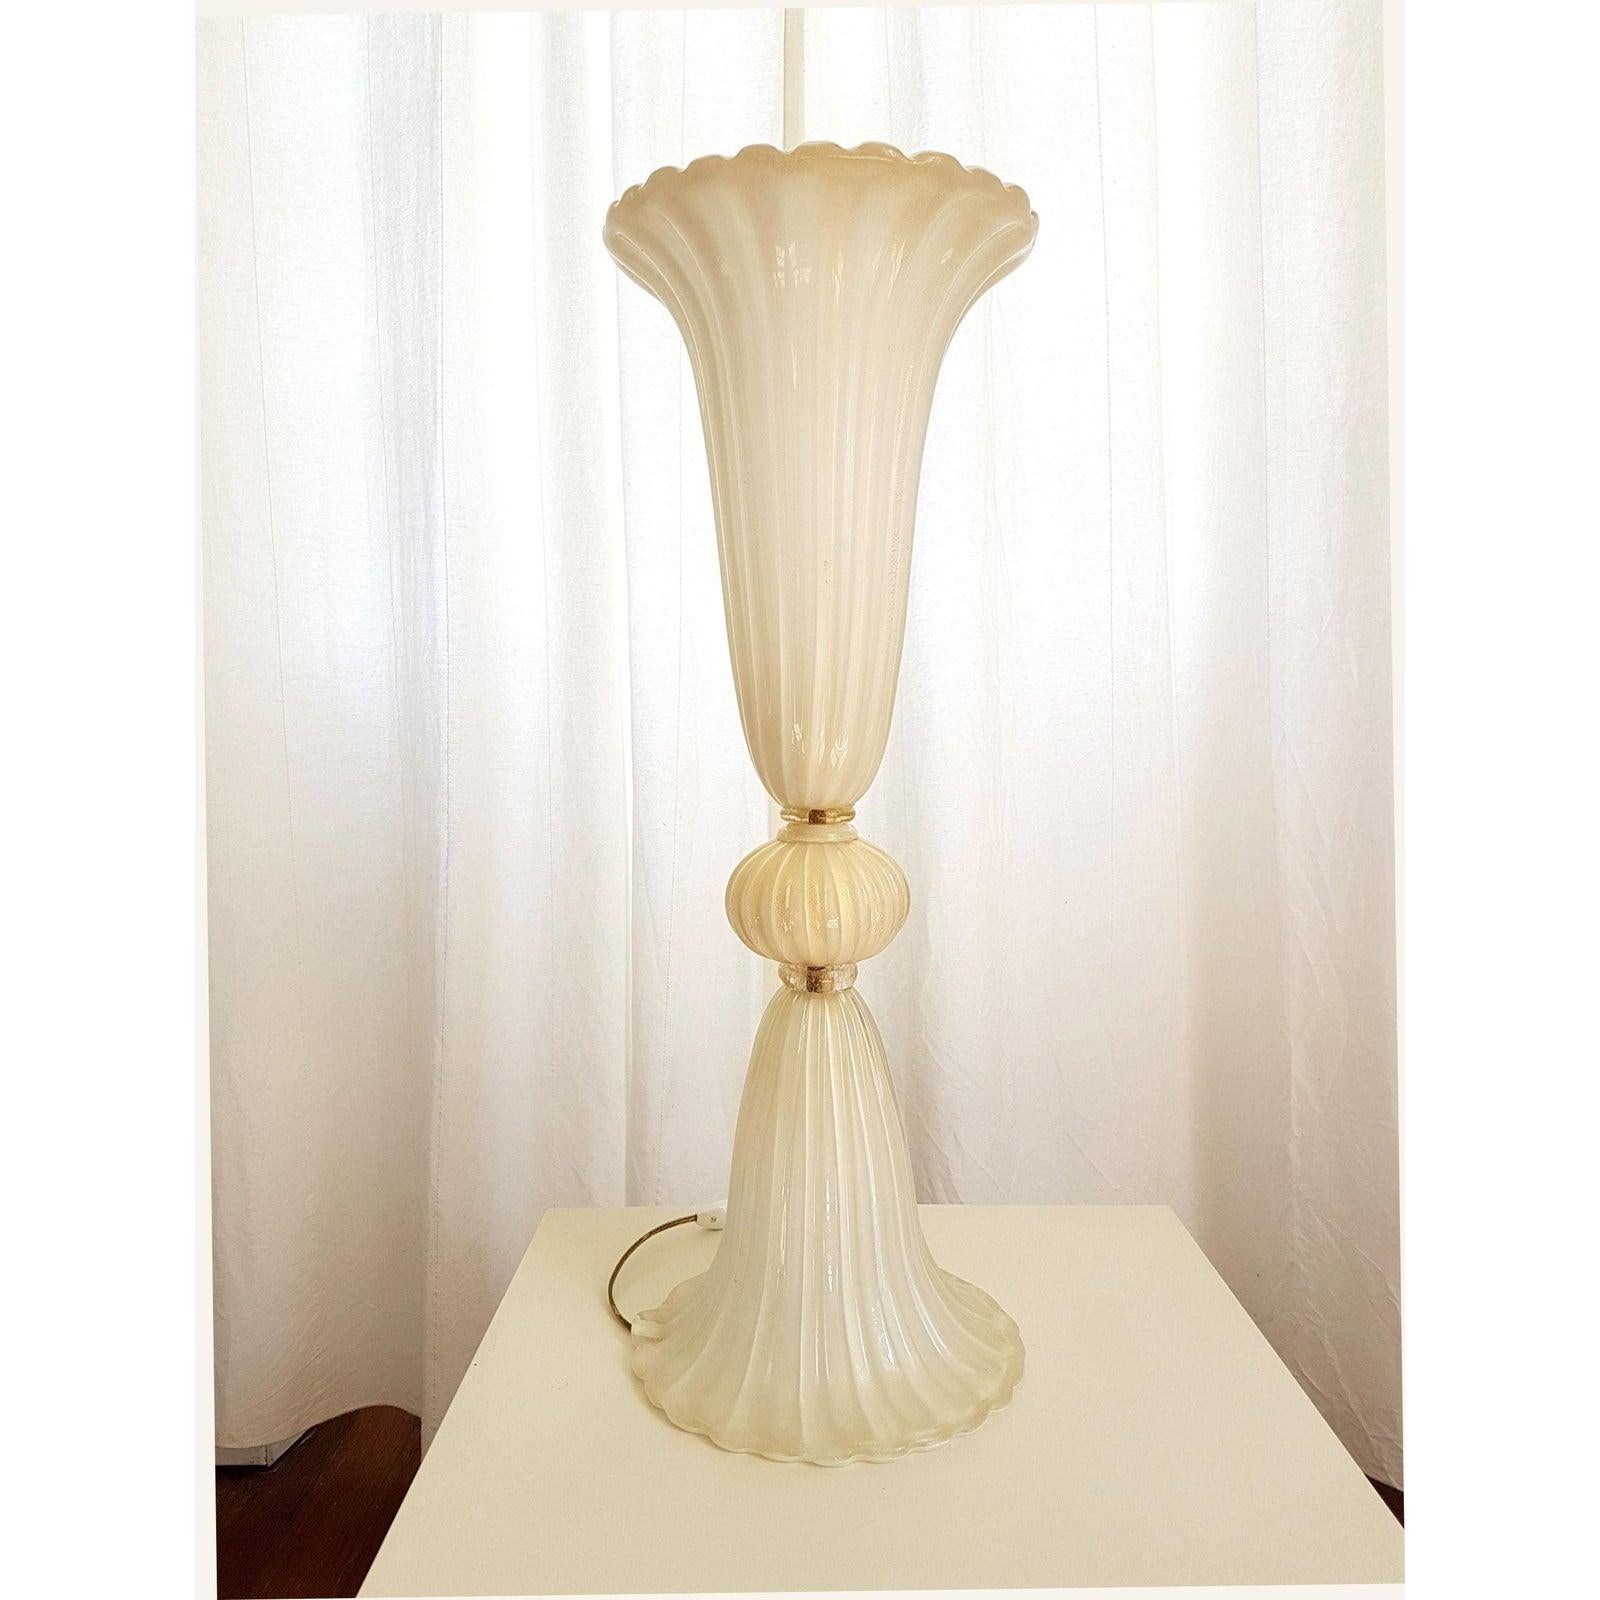 Paire de très grandes lampes de table ou de lampadaires en verre de Murano soufflé à la bouche, de style Barovier et Toso, datant du milieu du siècle dernier.
Murano, Italie, années 1970.
Les lampes de style néoclassique sont fabriquées à la main